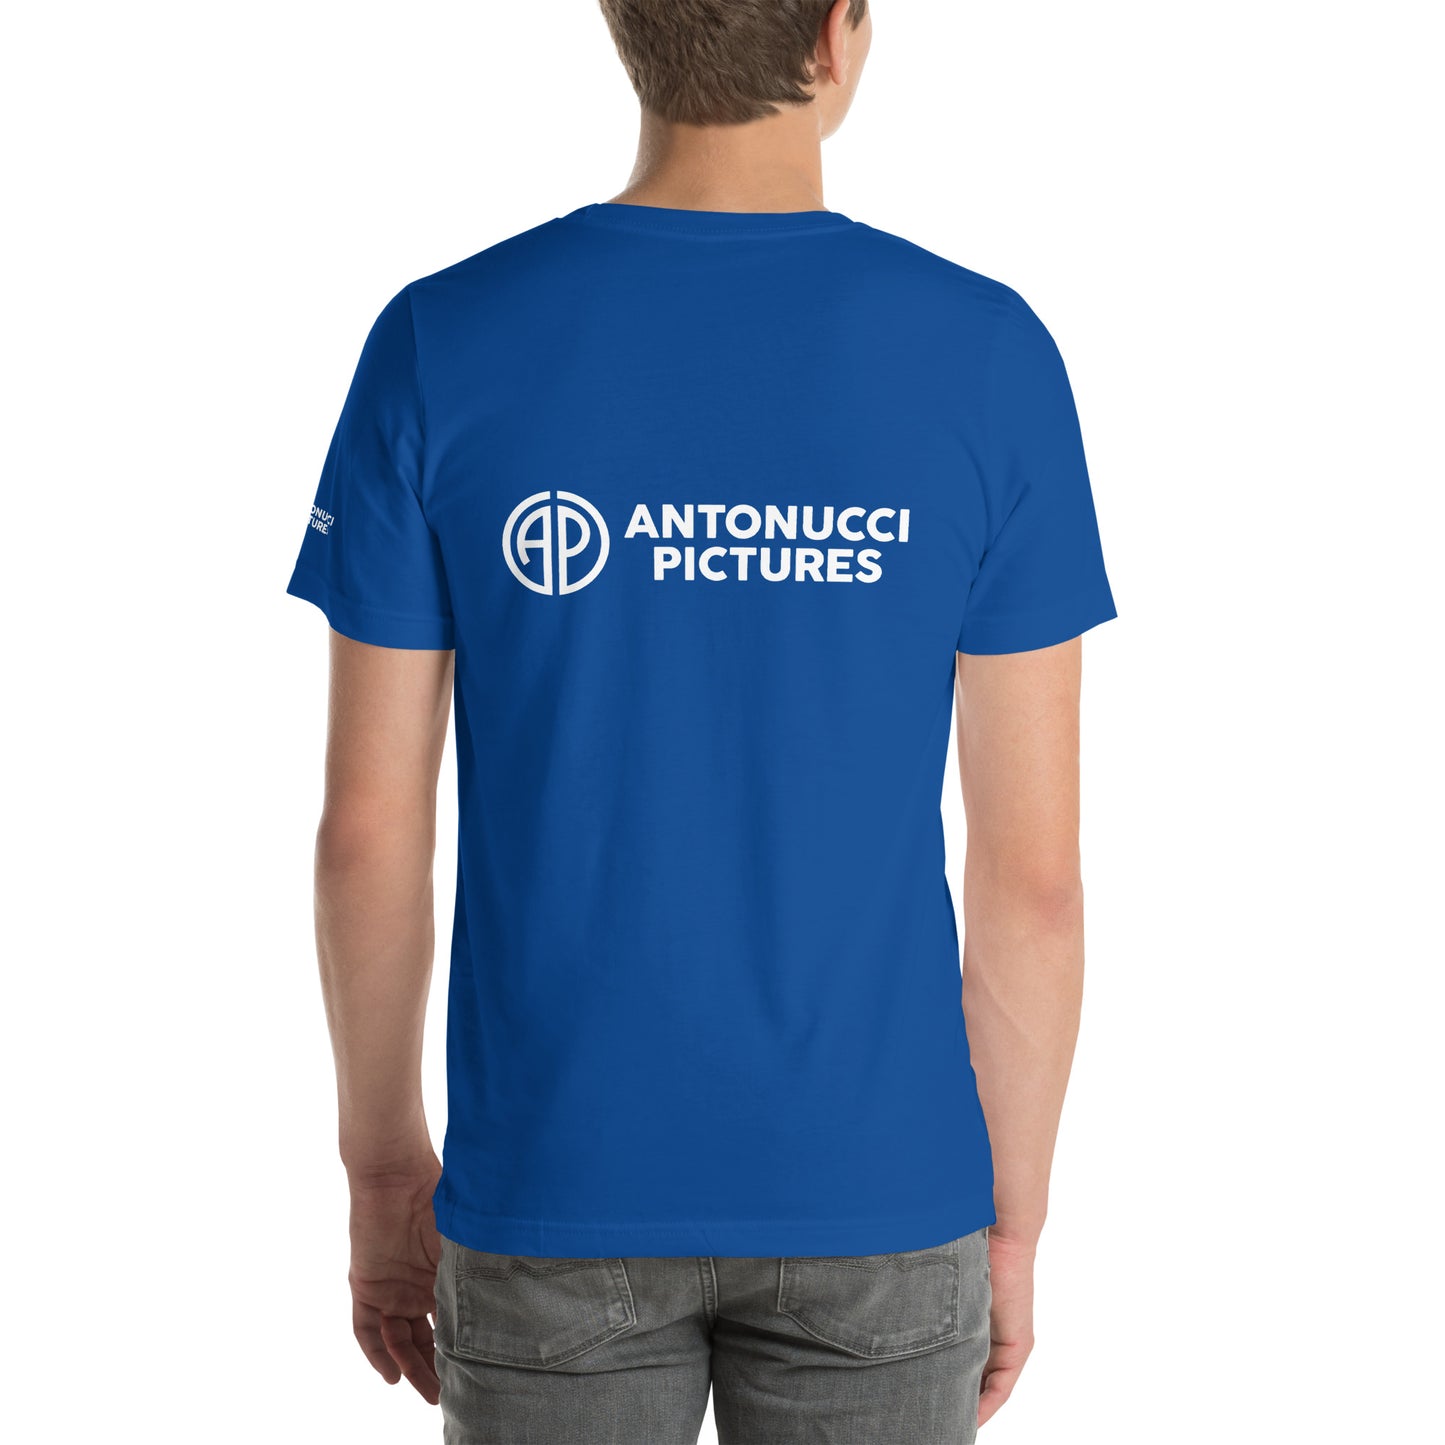 Antonucci Pictures variant Unisex t-shirt